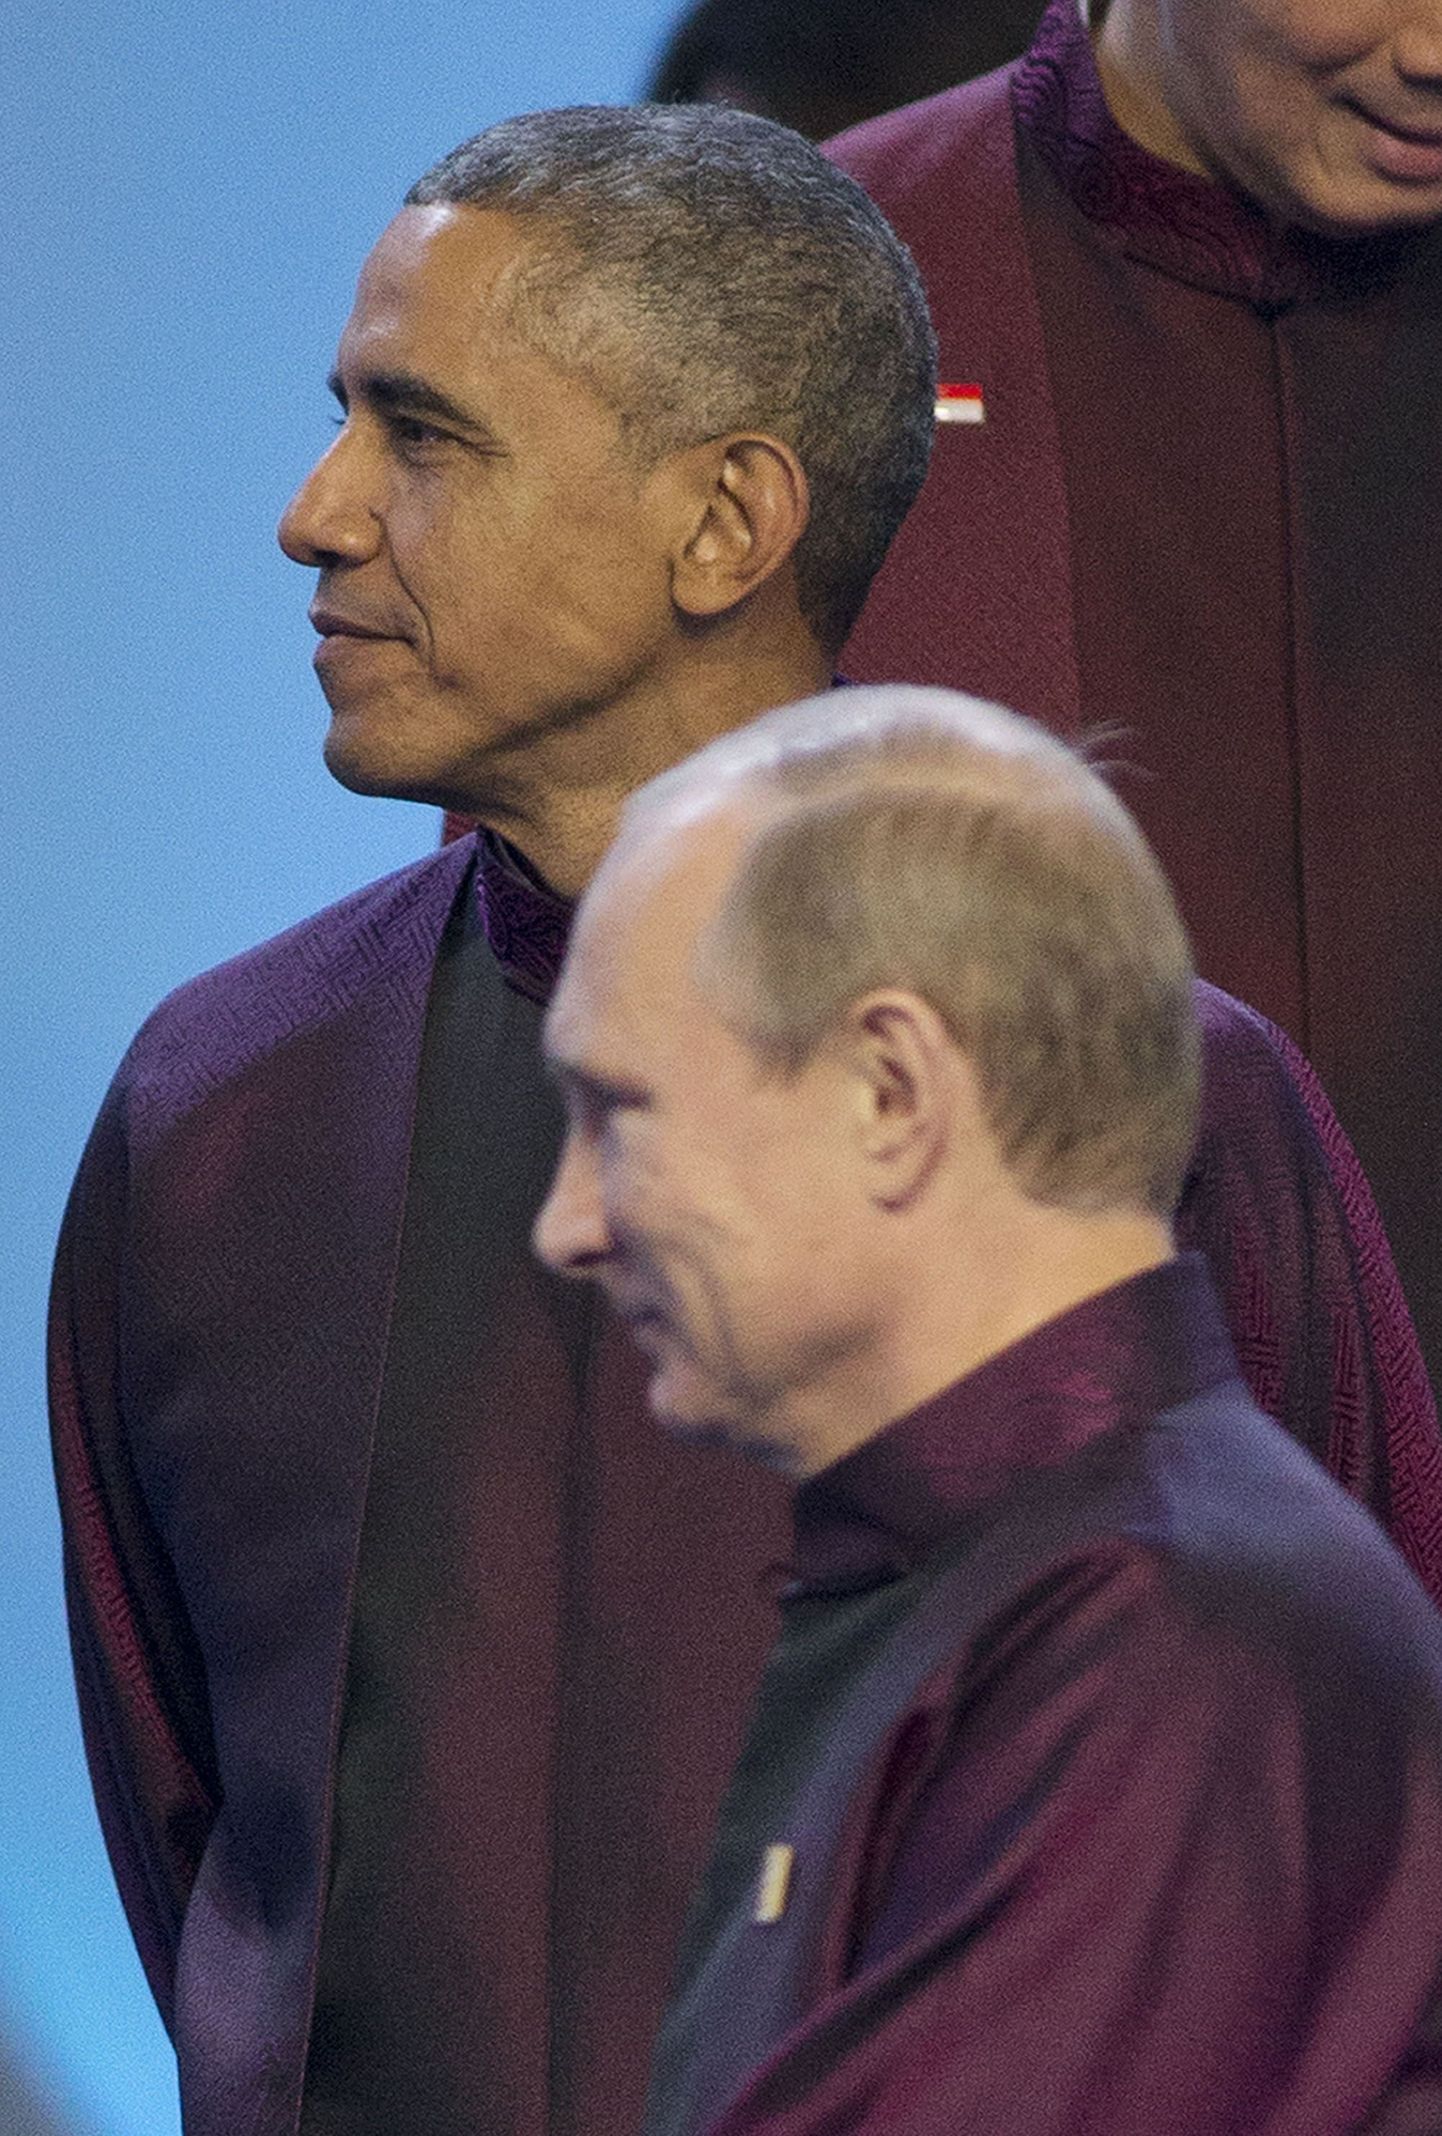 USA president Barack Obama ja Vene president Vladimir Putin valmistuvad APECi liidrite ühiseks pildistamiseks Pekingis.